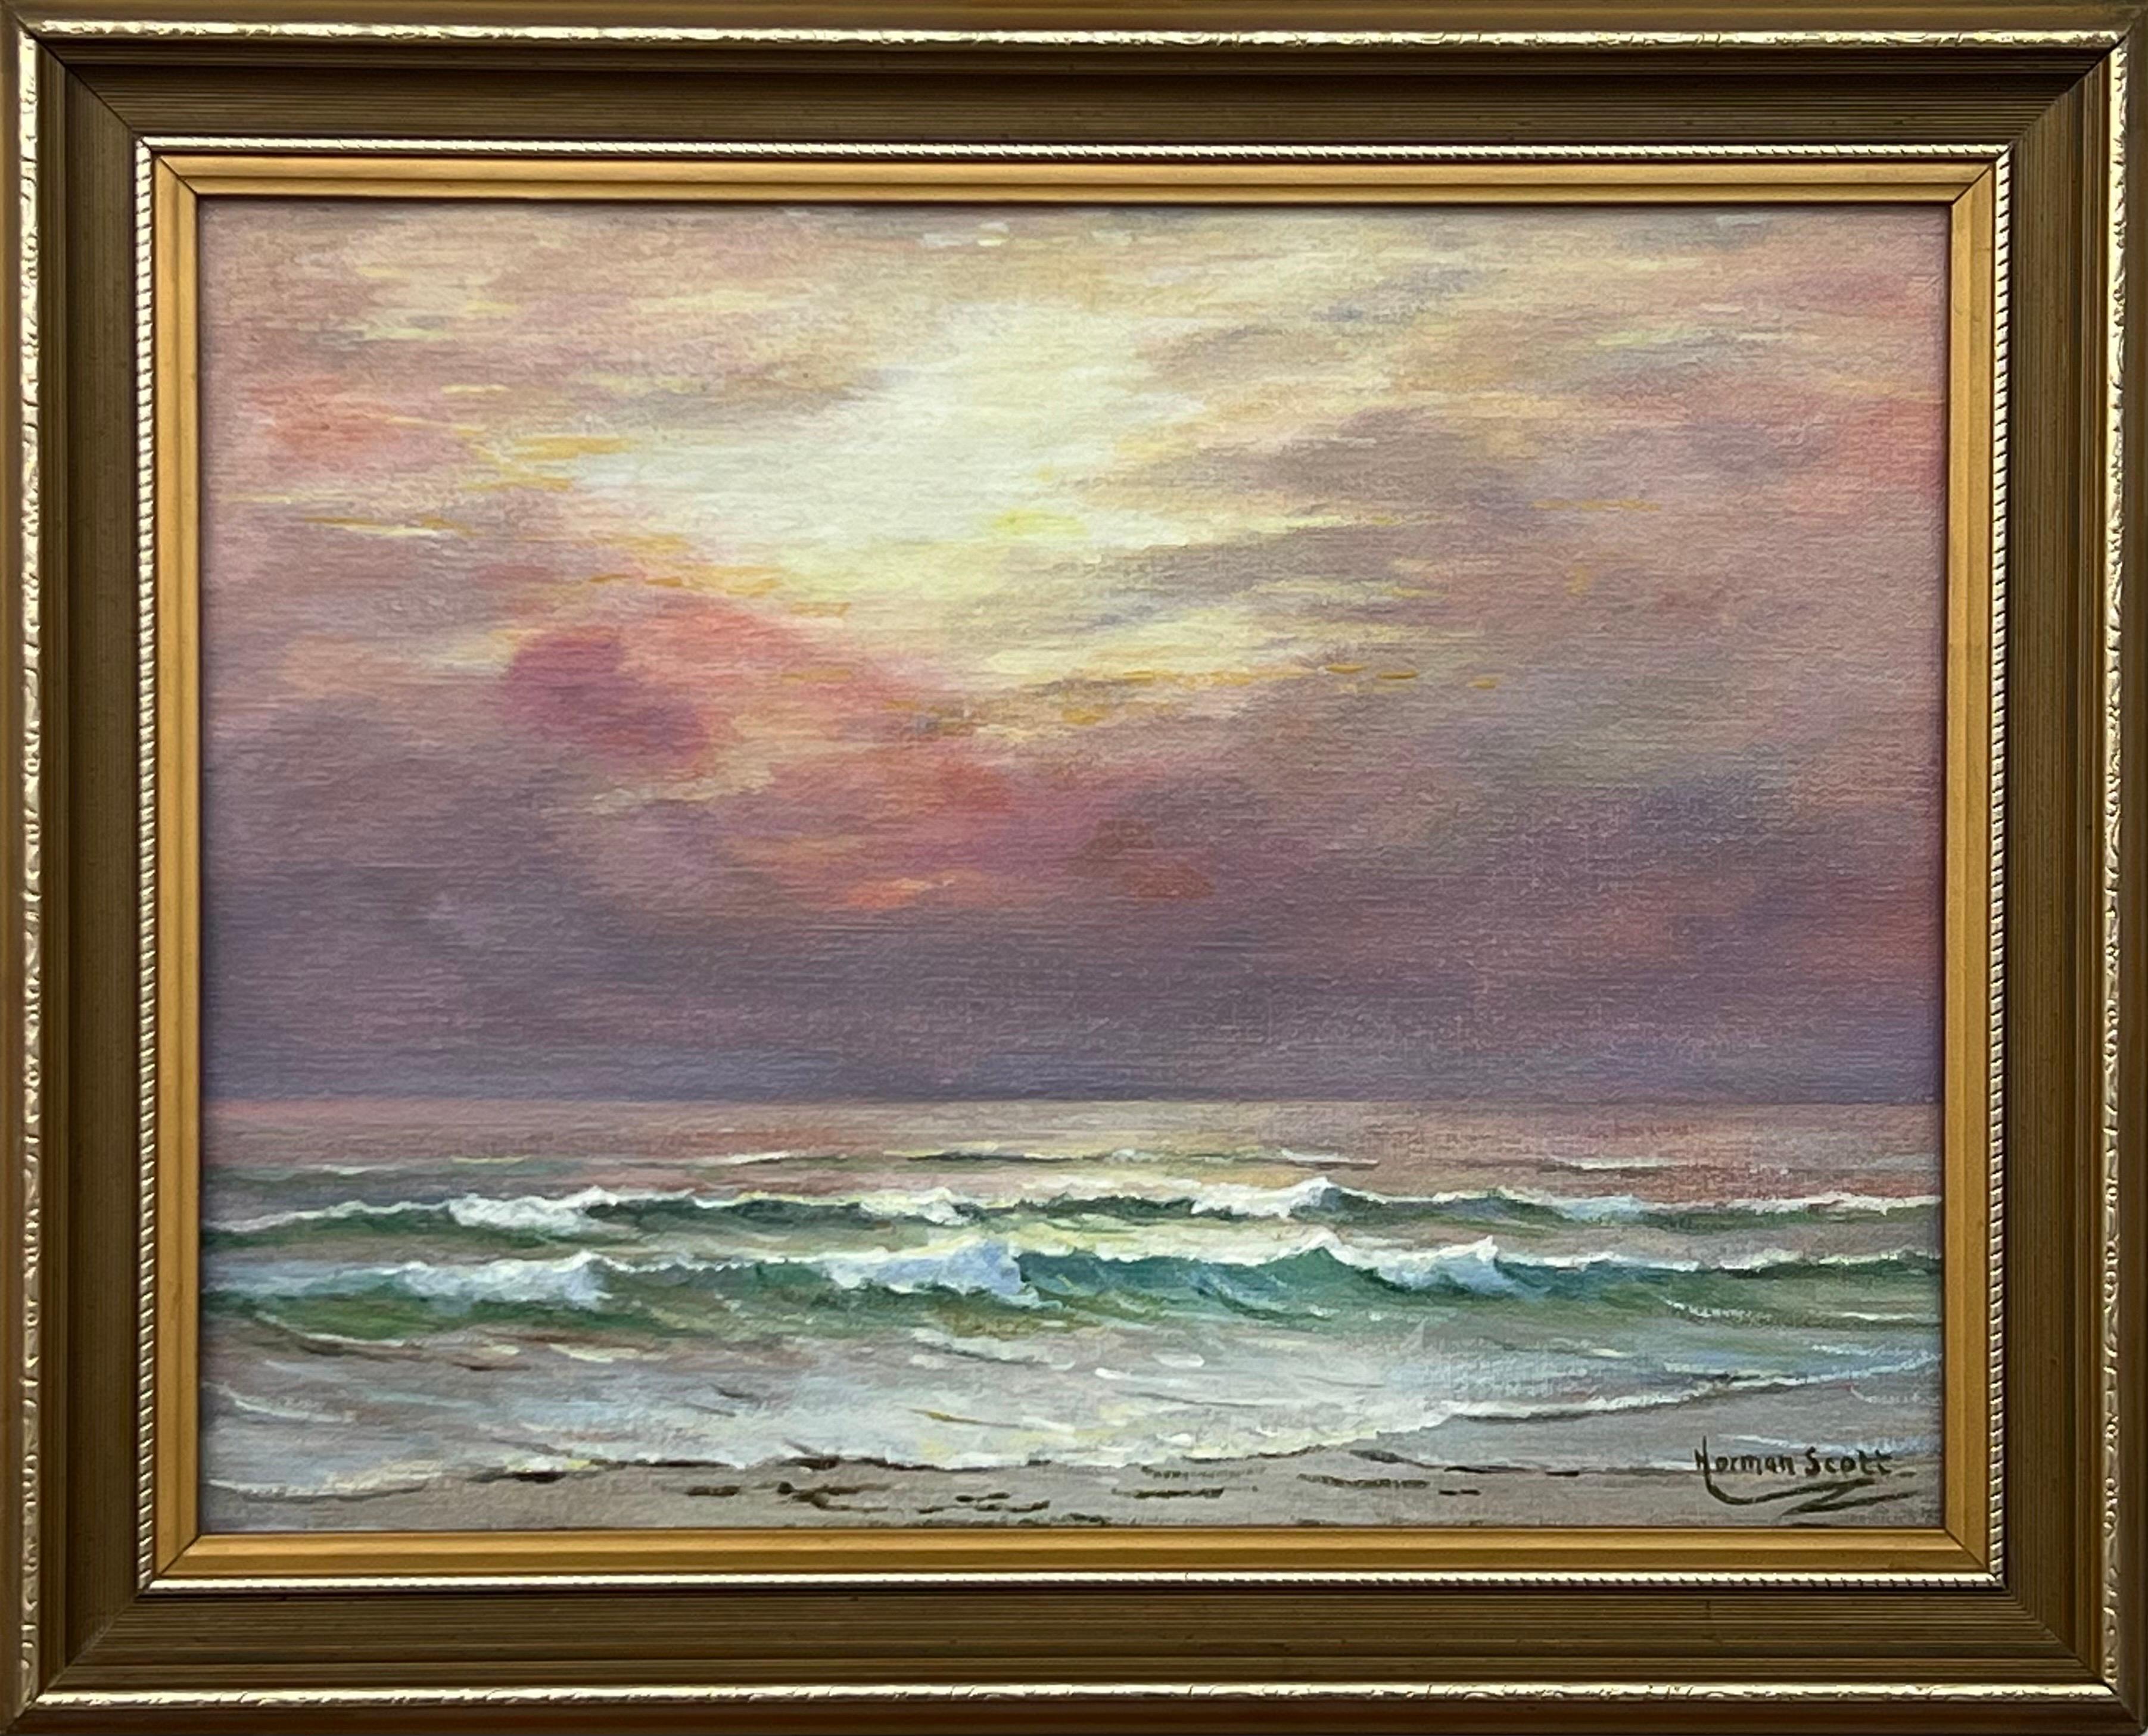 Peinture de paysage marin à l'aube avec ciel rose et vagues par un artiste britannique du 20e siècle